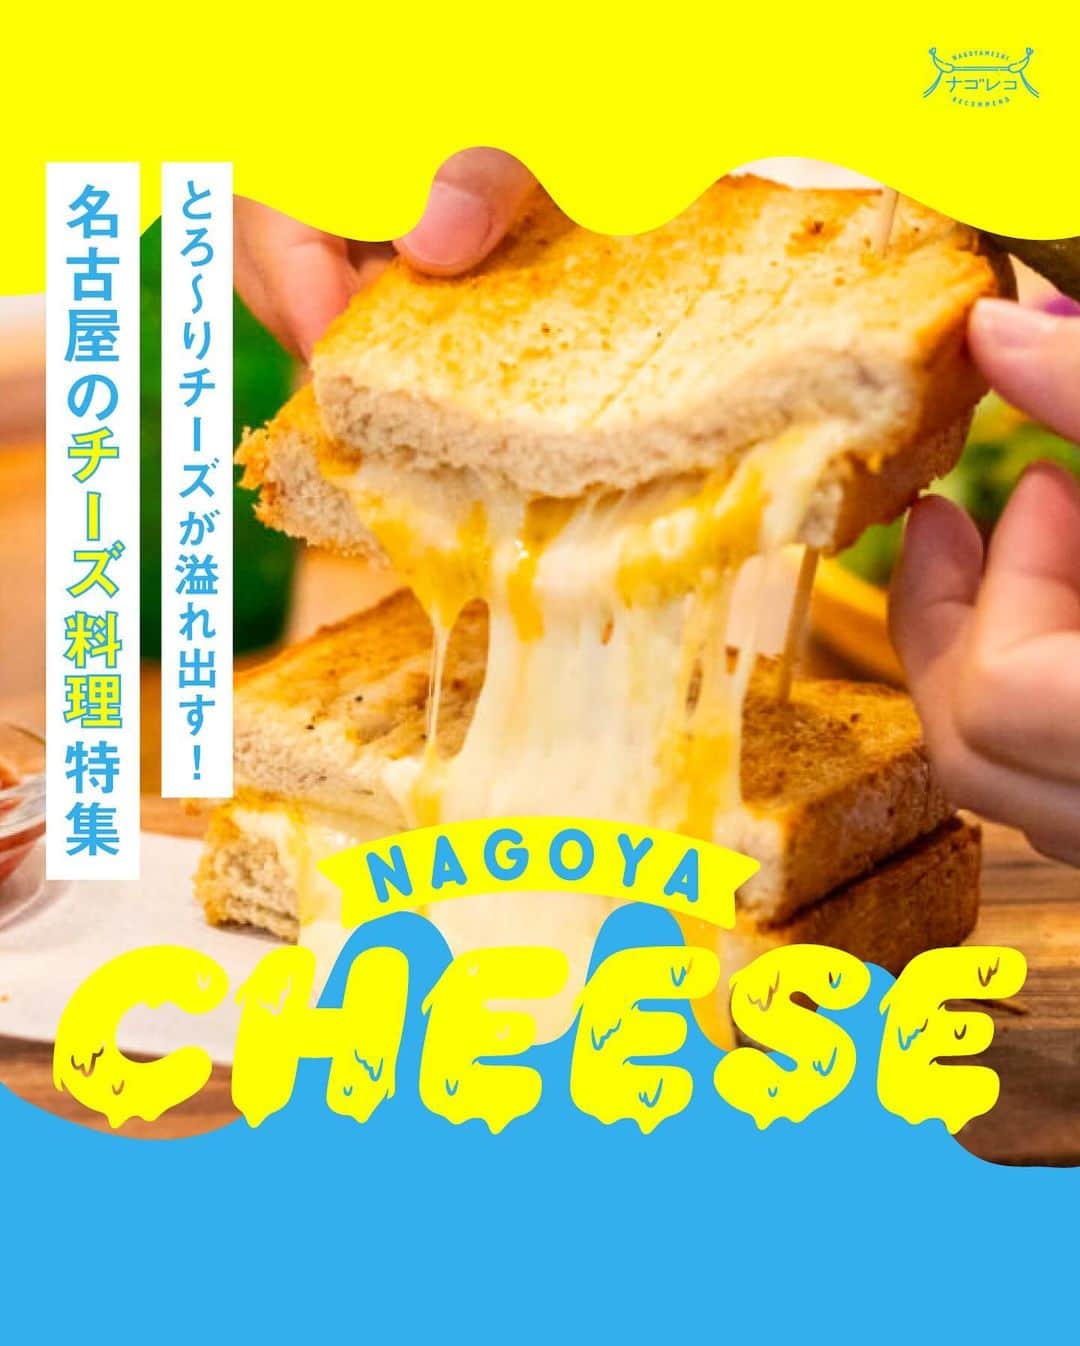 ナゴレコのインスタグラム：「＼とろ～りチーズが溢れ出す！名古屋のチーズ料理特集📍／ ⁡ ⁡ びよ〜んとチーズが伸びていたり、お皿から溢れるほどのチーズがかかっていたり...✨ そんな写真を見ると、思わず食欲がそそられますよね🔥 ⁡ 今回は、ナゴレコ編集部がおすすめする、チーズが主役のお料理が楽しめるお店をまとめてご紹介🧀💕 いつでも見られるように、ぜひ保存しておいてね🔖 ⁡ ⁡ 本山｜LIBERTY SAND さん 栄｜Industrial さん 吹上｜CAFE GLOBE さん ささしまライブ｜Hokkaido Cheese Factory さん 伏見｜農家のパスタ屋 NAPPA さん ナゴヤドーム前矢田｜十勝豚丼専門店 㐂久好 さん 名駅｜名古屋ガーデンファーム名駅店 さん 栄｜SAROS.Night MARCHE さん 中島｜くれえぷリン さん ⁡ ⁡ 気になるチーズ料理はあったかな👀？ ぜひ自分好みのチーズ料理を見つけてみてください🧀 ⁡ ⁡ 記事では全10店舗を紹介しています✨ お店についてもっと詳しく知りたい人は、今すぐWeb版ナゴレコをチェックしてね🗒 ⁡ ┈┈┈┈┈┈┈┈┈┈┈┈┈┈┈┈┈┈┈ ⁡ 🍤名古屋のローカルグルメメディア【ナゴレコ】🍤 ⁡ 名古屋人がレコメンドする本当に美味しい名古屋めし🥢 これさえフォローしておけば、街の流行りがきっとわかる◎ 100名以上の編集部で作り上げる、名古屋エリア最大規模のグルメメディアです📝 ⁡ 他の投稿はこちらから👉 @nagoya_food ⁡ ⁡ #ナゴレコ で、あなたの投稿をリポスト！ webサイト「ナゴレコ」もチェックしてね👀 ･････････････････････････････････････････ ⁡ ⁡」